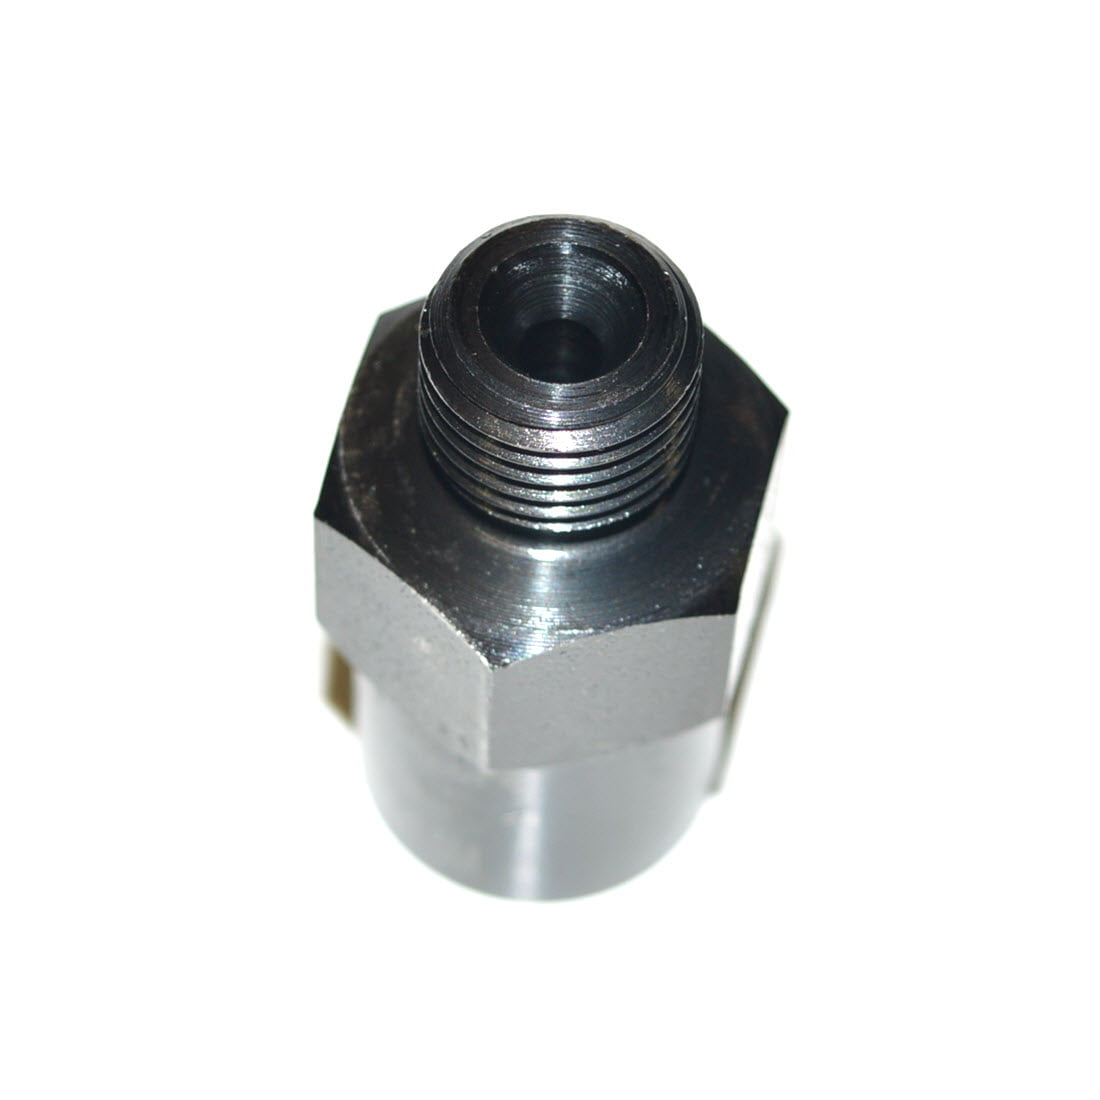 Bosch CP4 High pressure adaptor 1